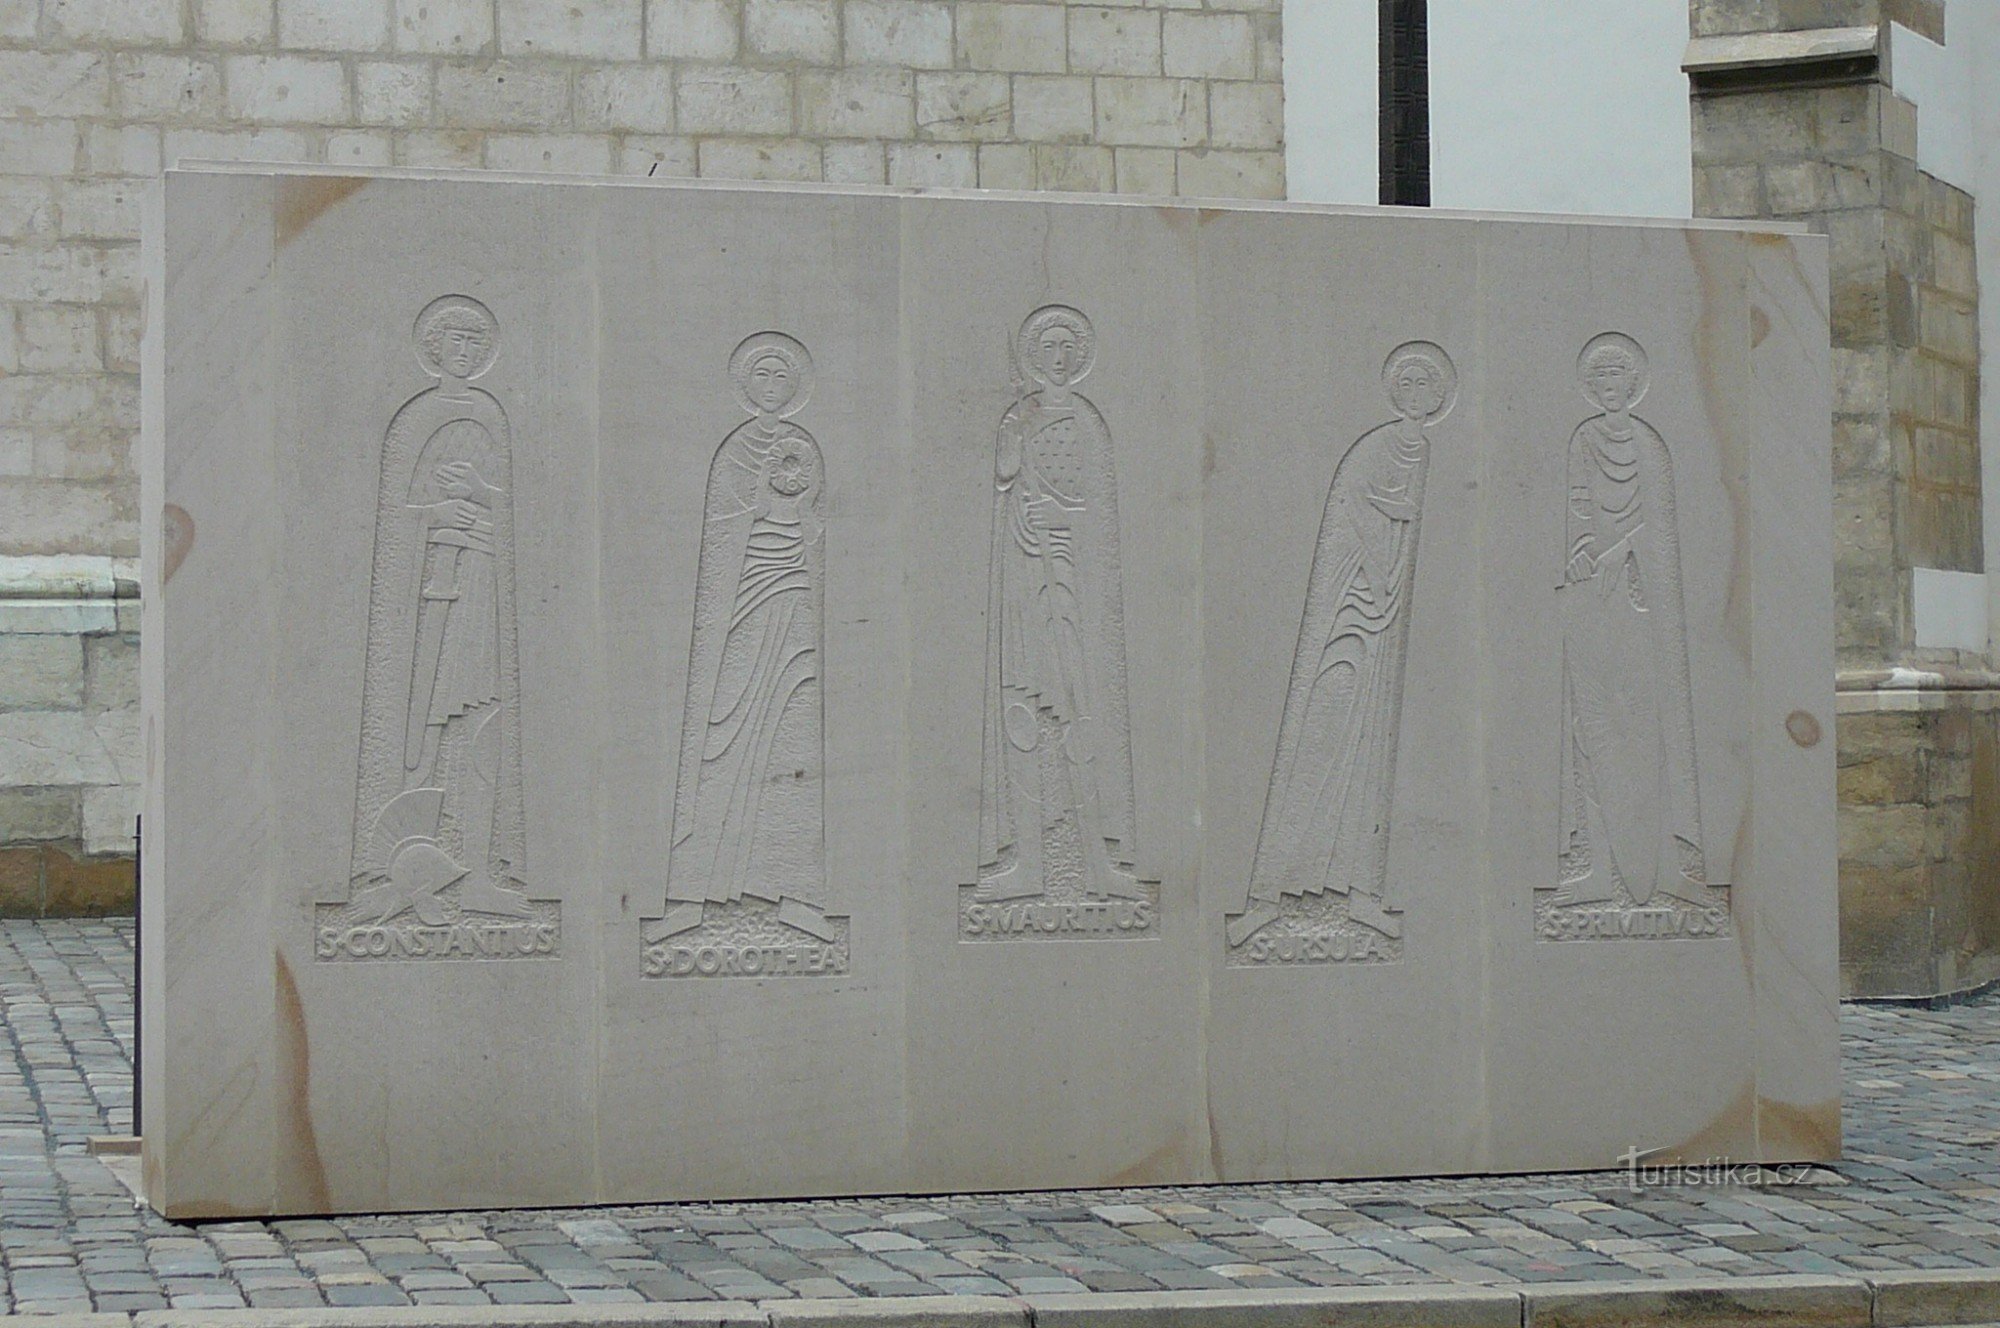 Der hintere Teil der Eingangswand mit der Darstellung der fünf Heiligen, die mit dem Knochen in Verbindung stehen